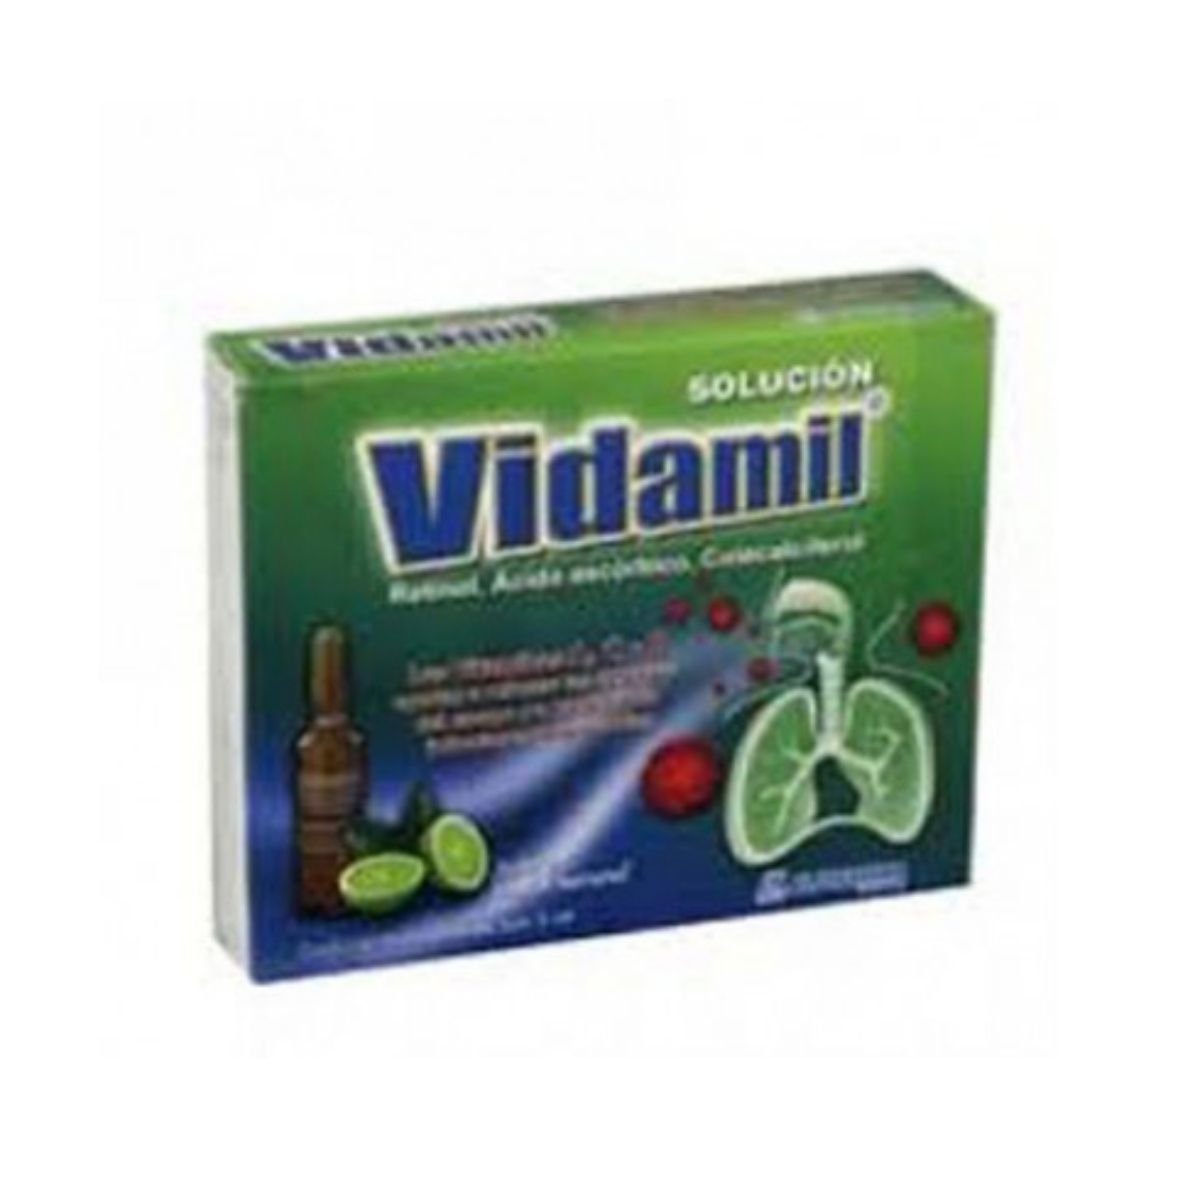 Vidamil Oral Limon 1 Caja 5 Ampolletas 3 Ml